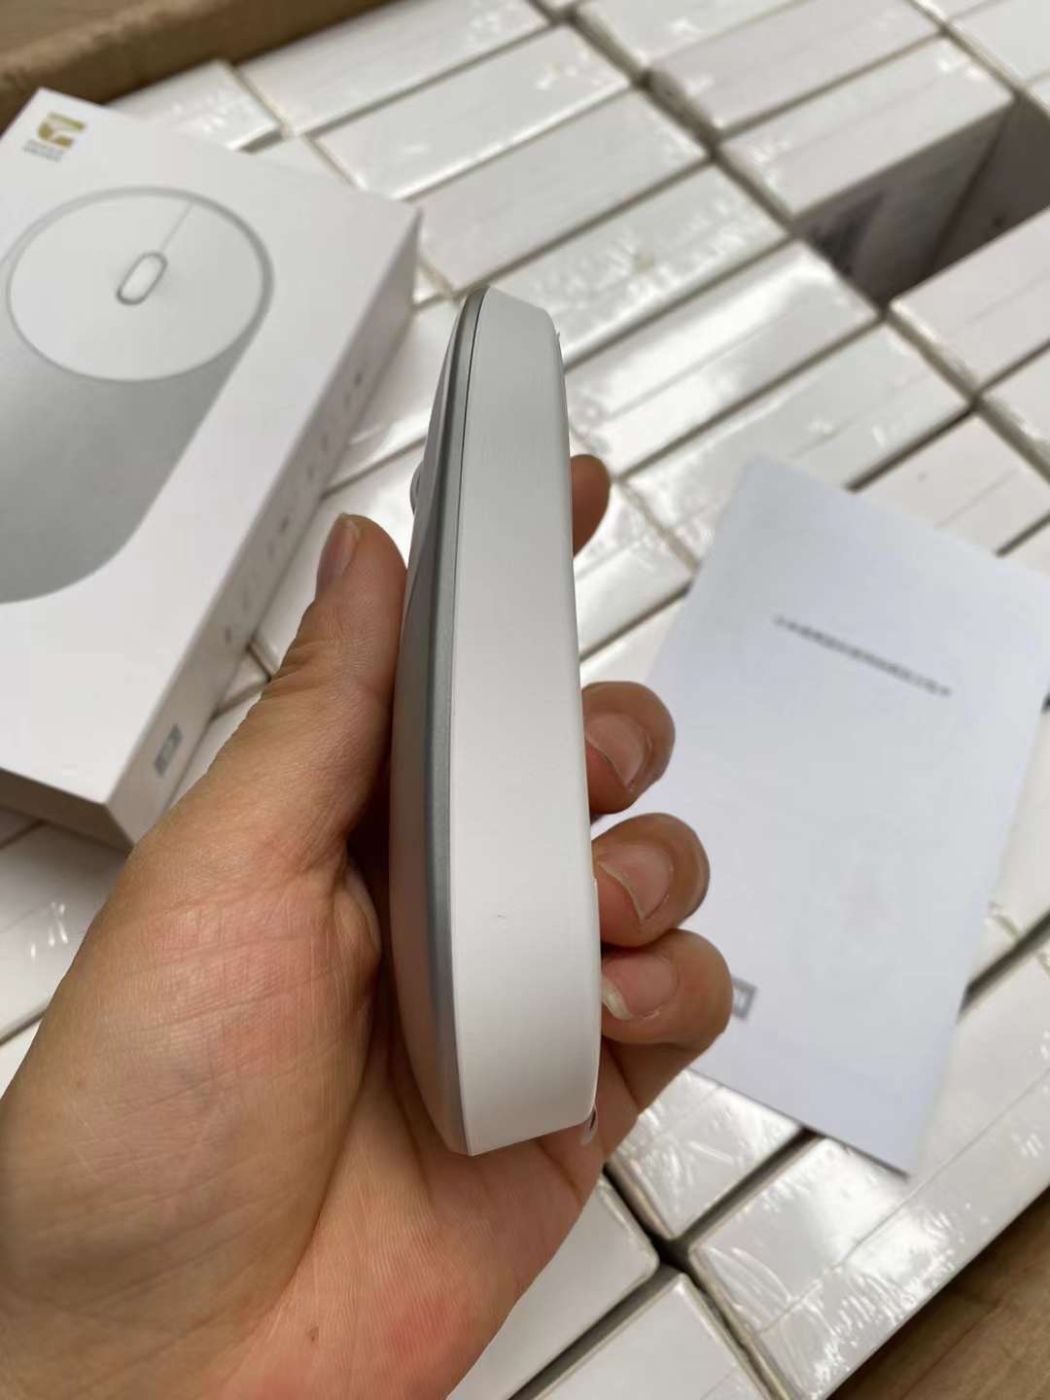 {Order giao 5/7} Chuột không dây Xiaomi portable mouse XMSB02MV chuẩn 2 kết nối ( màu trắng )